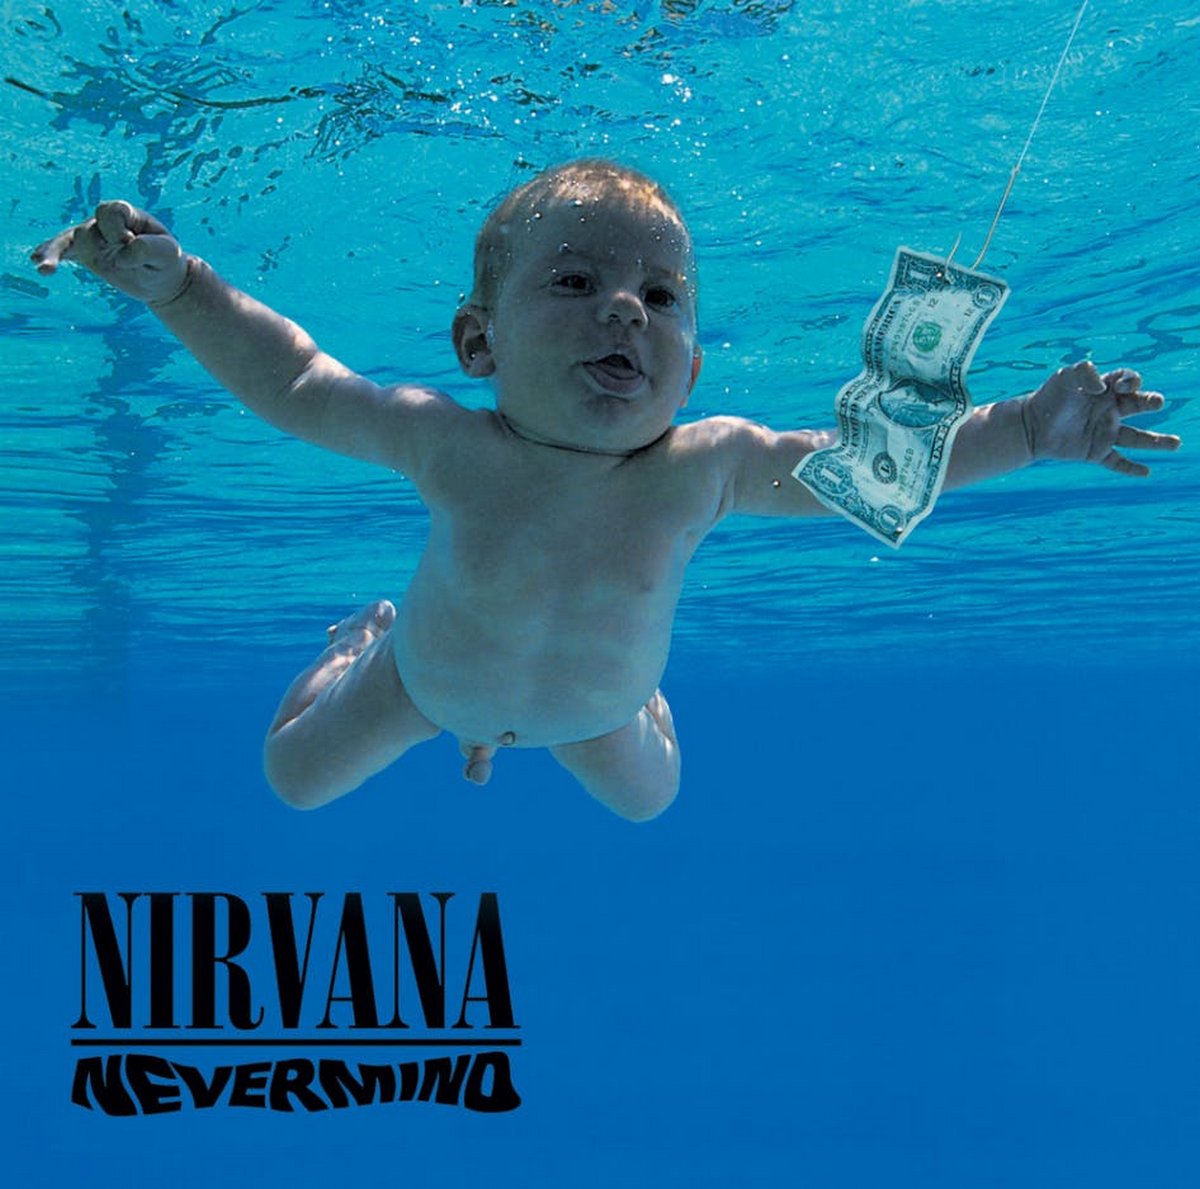 Le bébé sur la couverture de l’album Nevermind de Nirvana poursuit le groupe pour pornographie juvénile